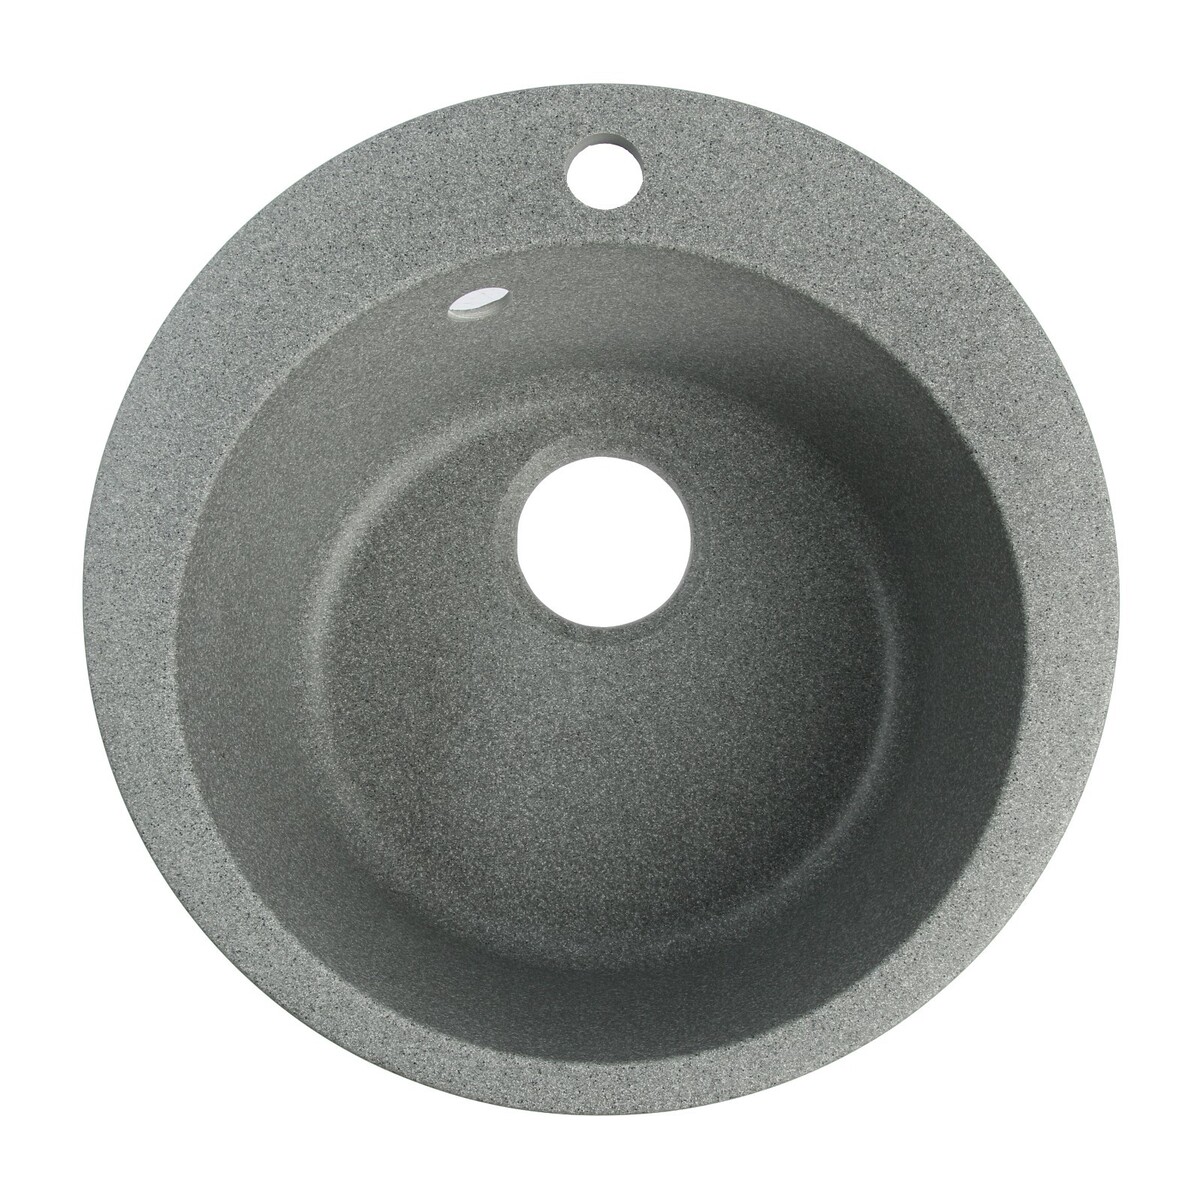 Мойка для кухни из камня zein 30/q8, d=475 мм, круглая, перелив, цвет темно-серый мойка для кухни из камня zein 30 q8 d 475 мм круглая перелив темно серый